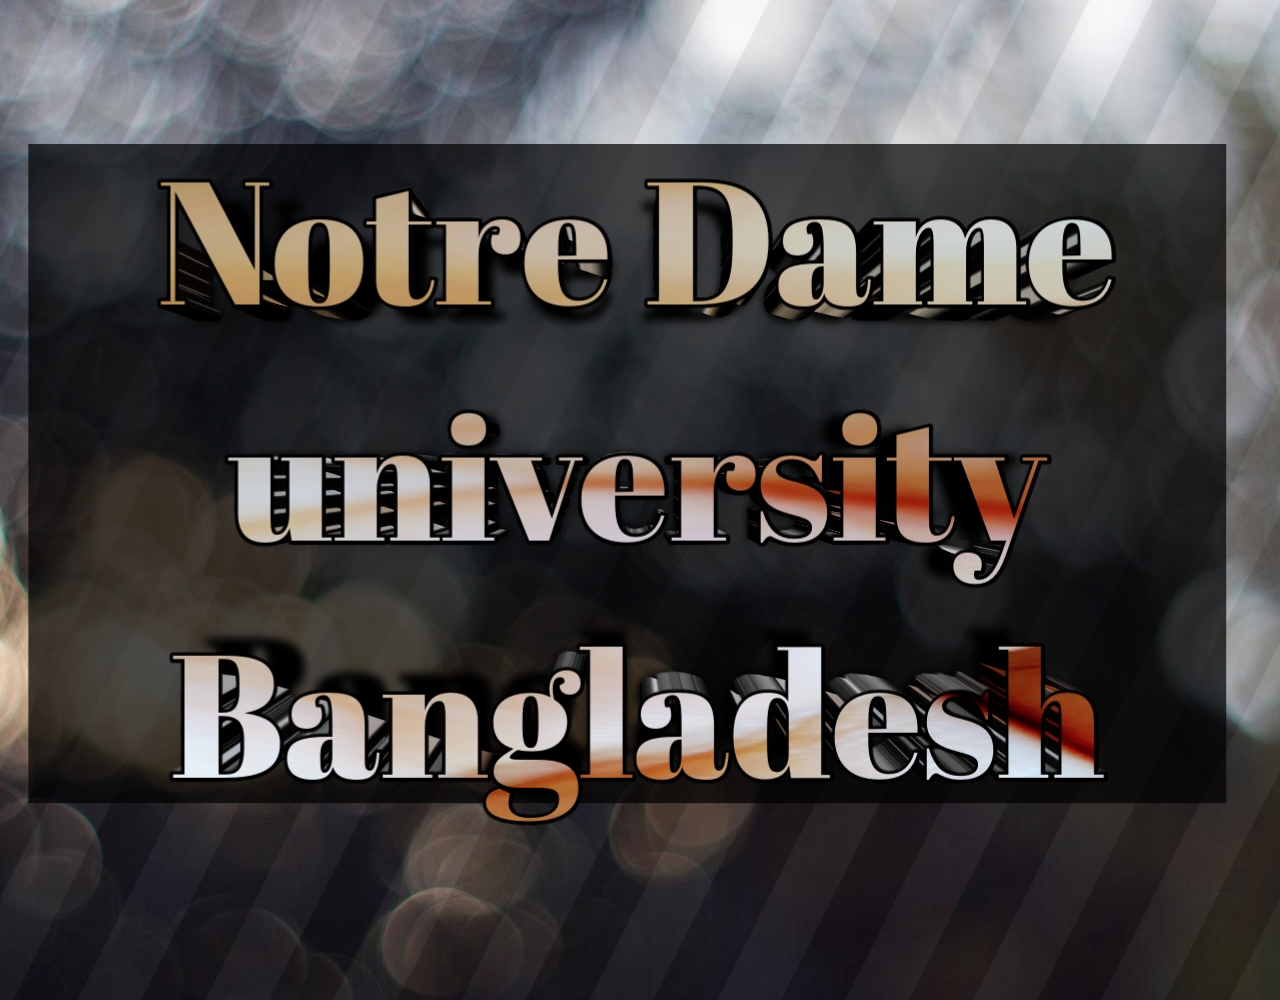 নটরডেম বিশ্ববিদ্যালয়ে ভর্তি পরীক্ষার পদ্ধতি 2020-2021, notre dame university of Bangladesh Admission system 2020-2021, notre dame university of Bangladesh admission test exam 2020-2021, নটরডেম বিশ্ববিদ্যালয়ে আবেদনের যোগ্যতা ২০২০-২১, notre dame university of Bangladesh admission ability 2020-2021, নটরডেম বিশ্ববিদ্যালয়ে আবেদনের ন্যূনতম জিপিএ,  notre dame university of Bangladesh admission test, নটরডেম বিশ্ববিদ্যালয় ইউনিট পদ্ধতি, notre dame university of Bangladesh unit system, নটরডেম বিশ্ববিদ্যালয়ের ভর্তি পরীক্ষার নম্বর বন্টন ২০২০-২০২১, notre dame university of Bangladesh subject list, নটরডেম বিশ্ববিদ্যালয়ের ভর্তি পরীক্ষার তারিখ ২০২০-২০২১, Notre Dame university of Bangladesh admission date 2020-2021, নটরডেম বিশ্ববিদ্যালয় আসন সংখ্যা 2020-2021, notre dame university of Bangladesh admission seat 2020-2021, নটরডেম বিশ্ববিদ্যালয় আবেদন ফি 2020-2021, notre dame university of Bangladesh admission fee 2020-2021,